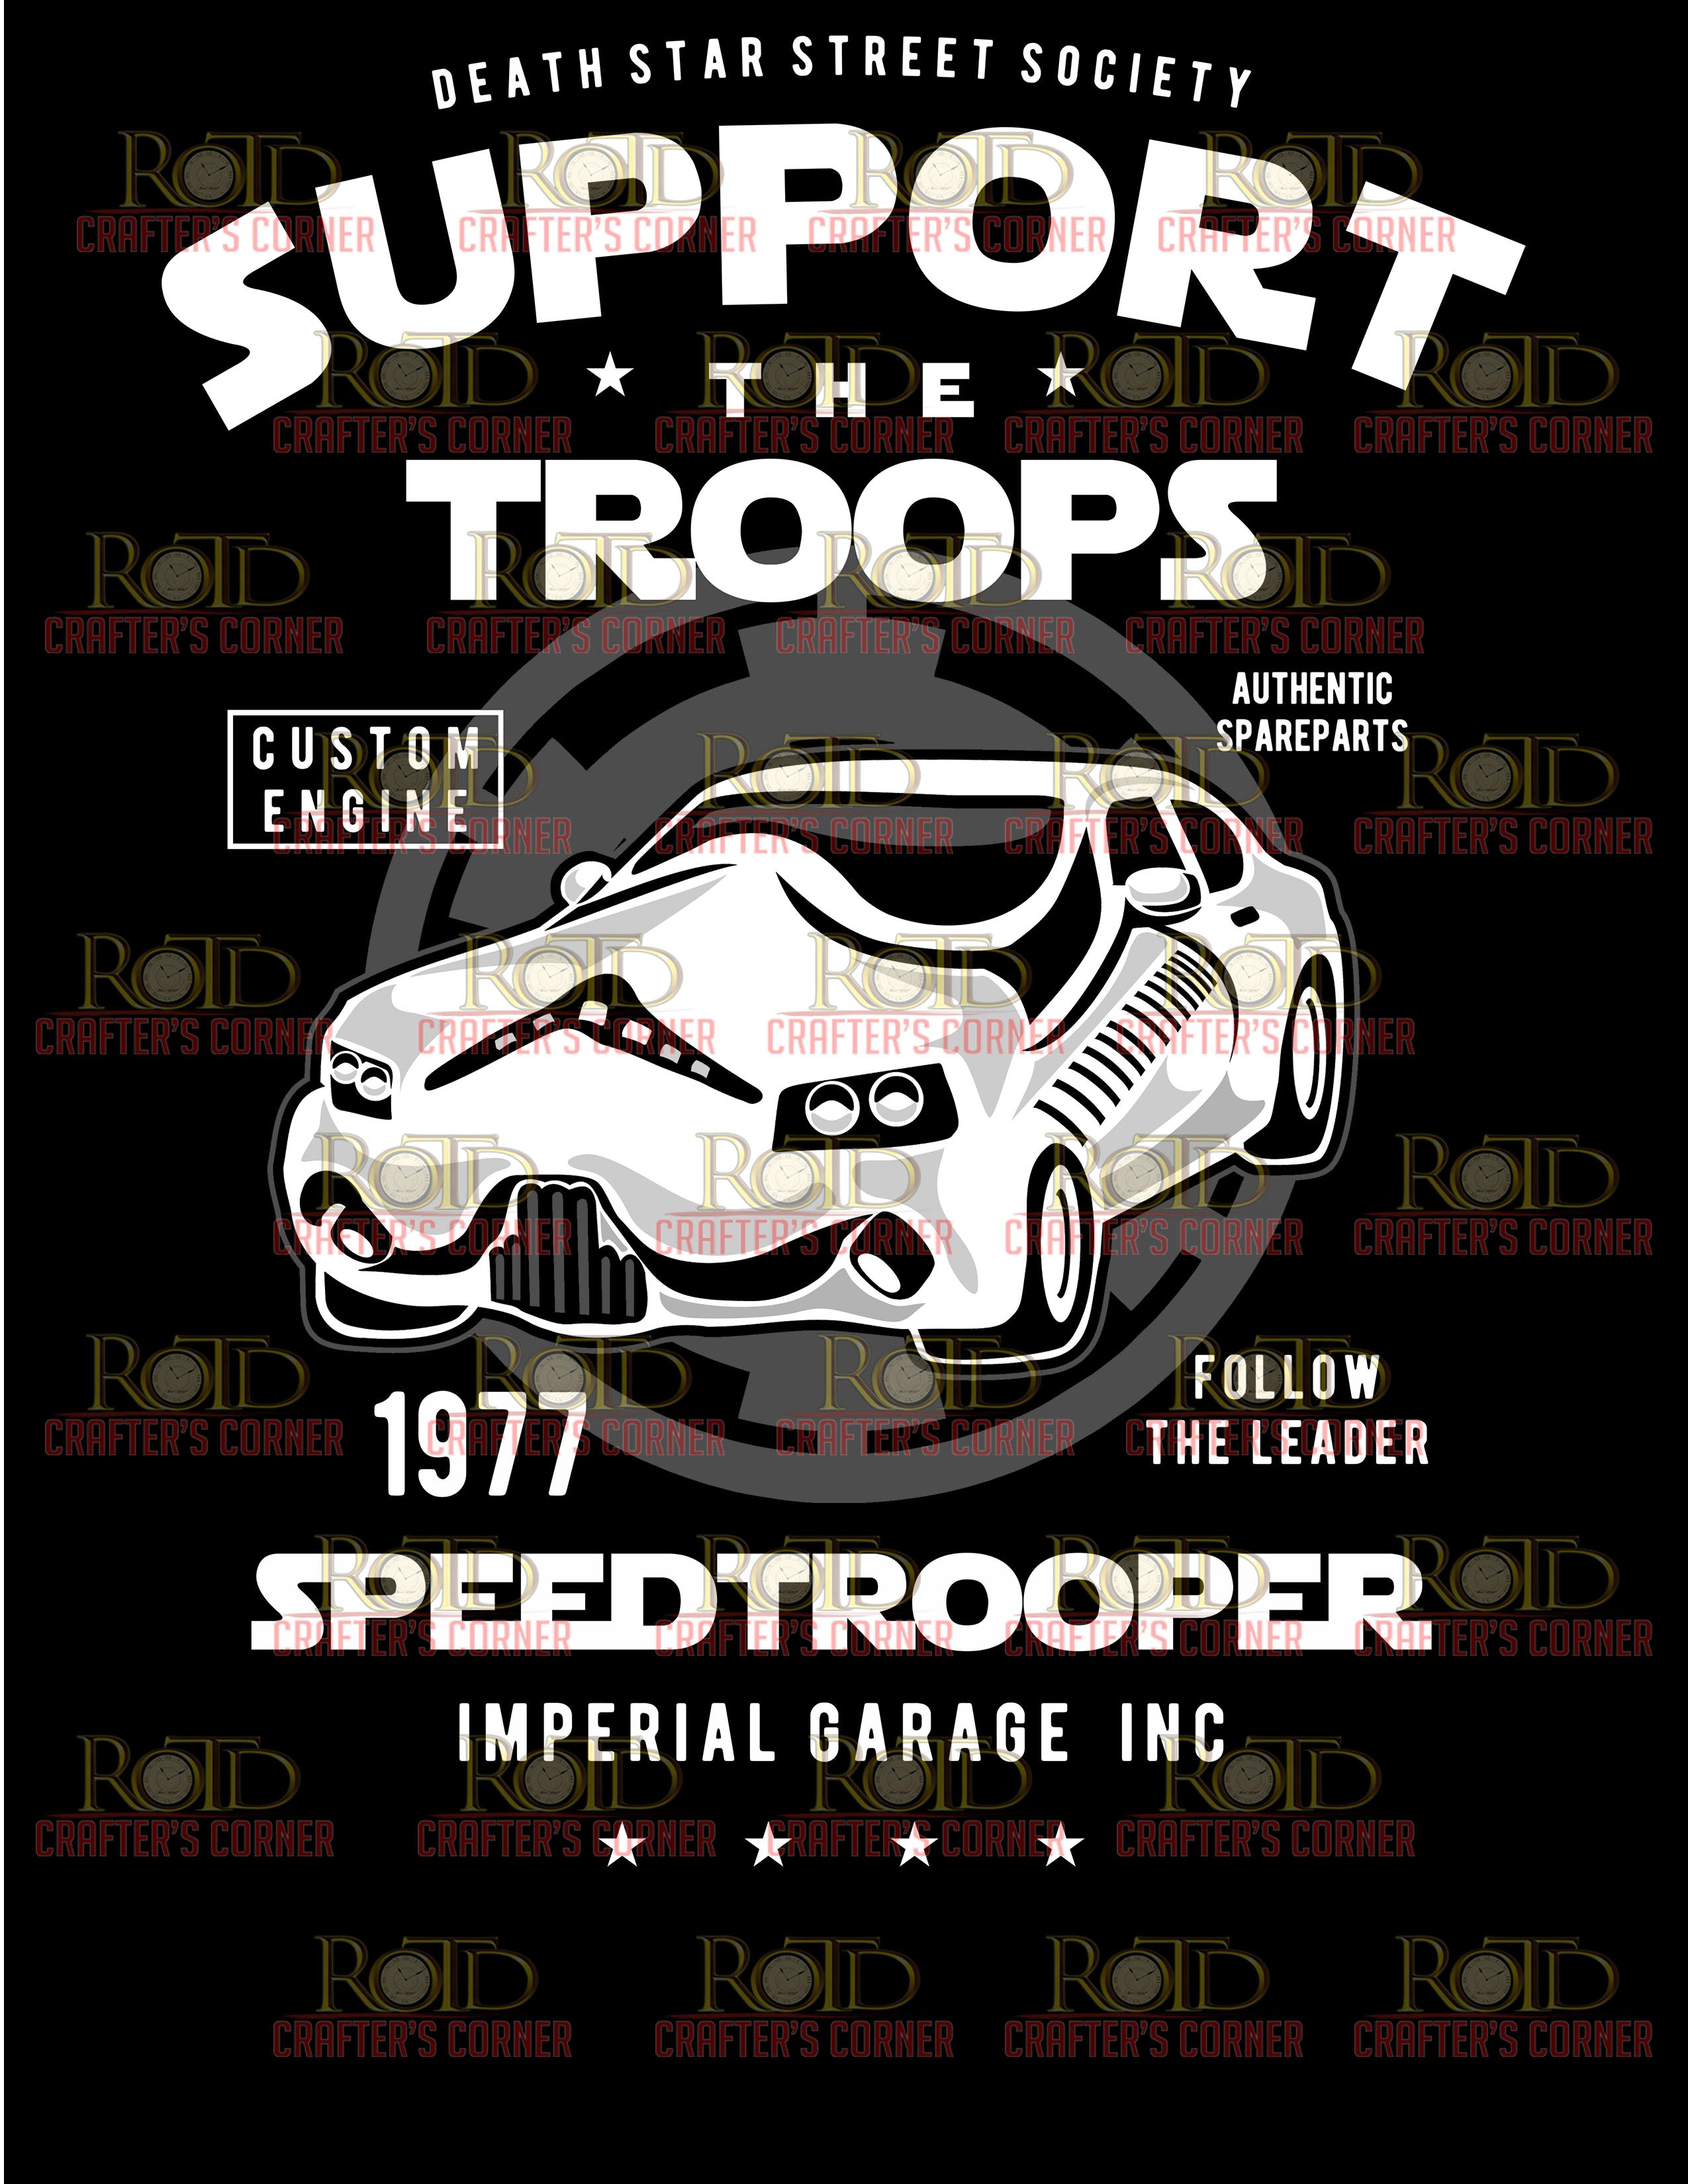 DTF Screen Print Image - SpeedTrooper